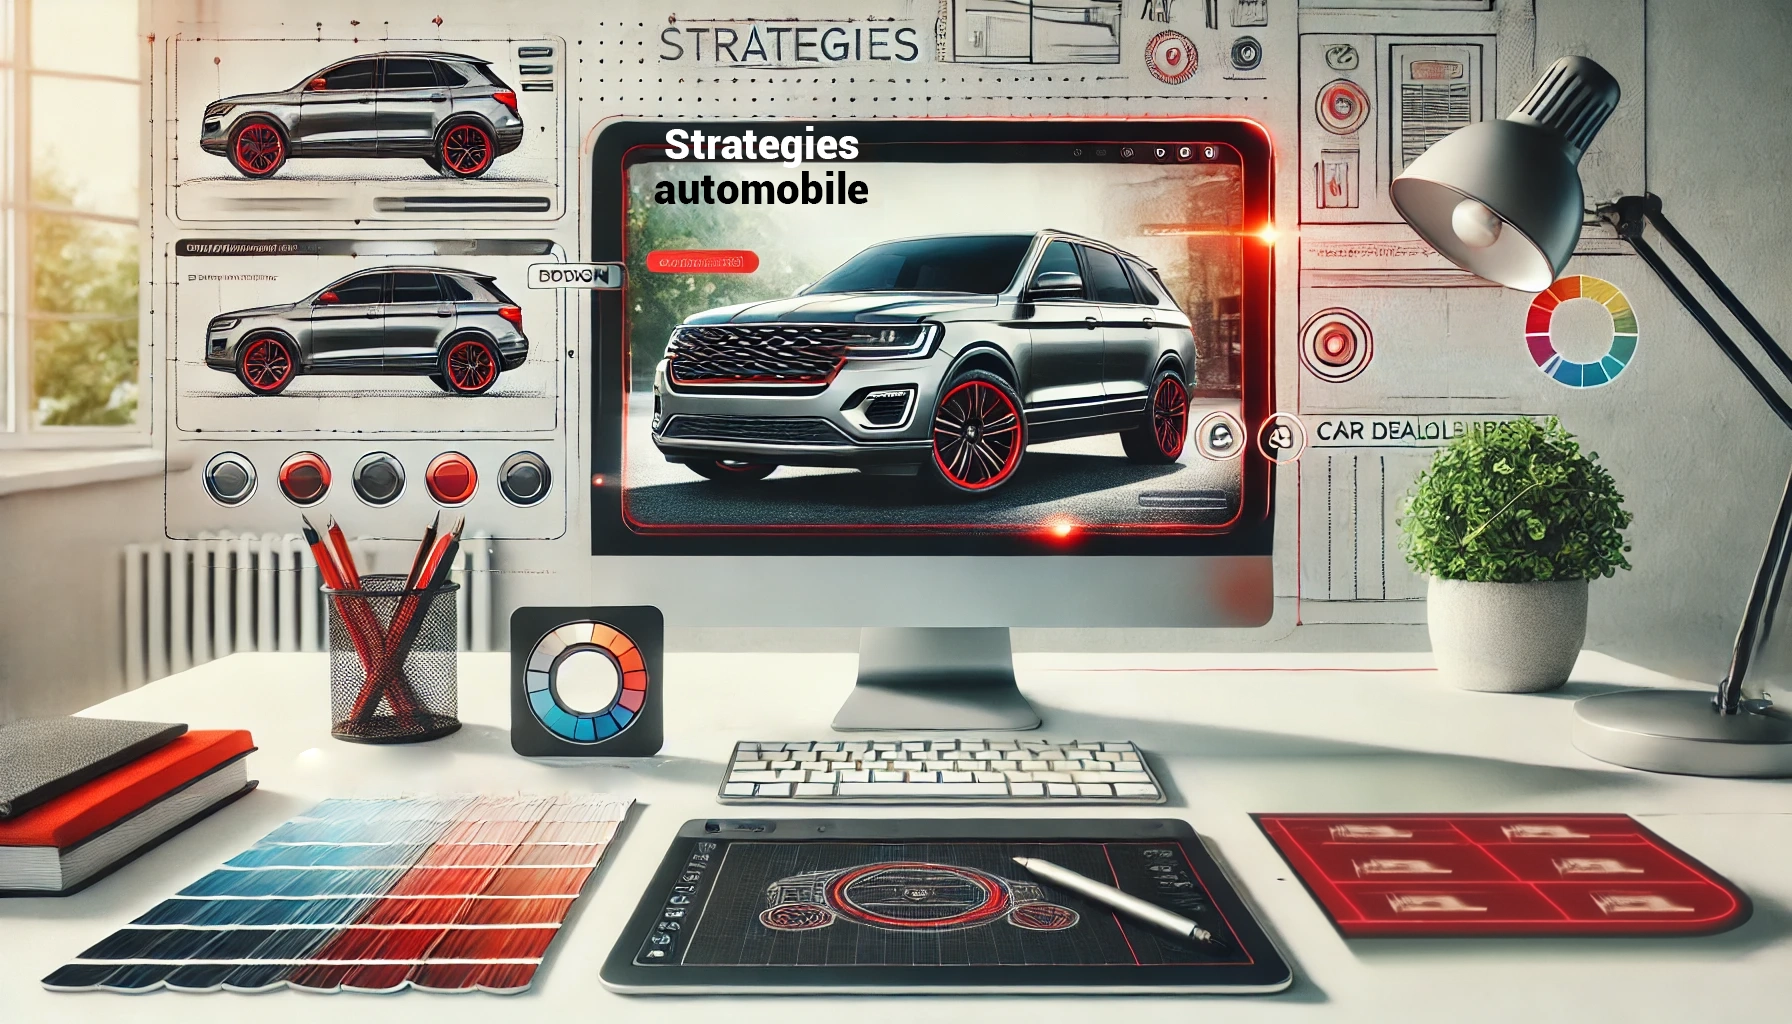 Un poste de travail informatique avec un design numérique d'une voiture à l'écran, entouré d'outils de conception et d'échantillons de couleurs. Le texte "Strategies automobile" est affiché à l'écran.